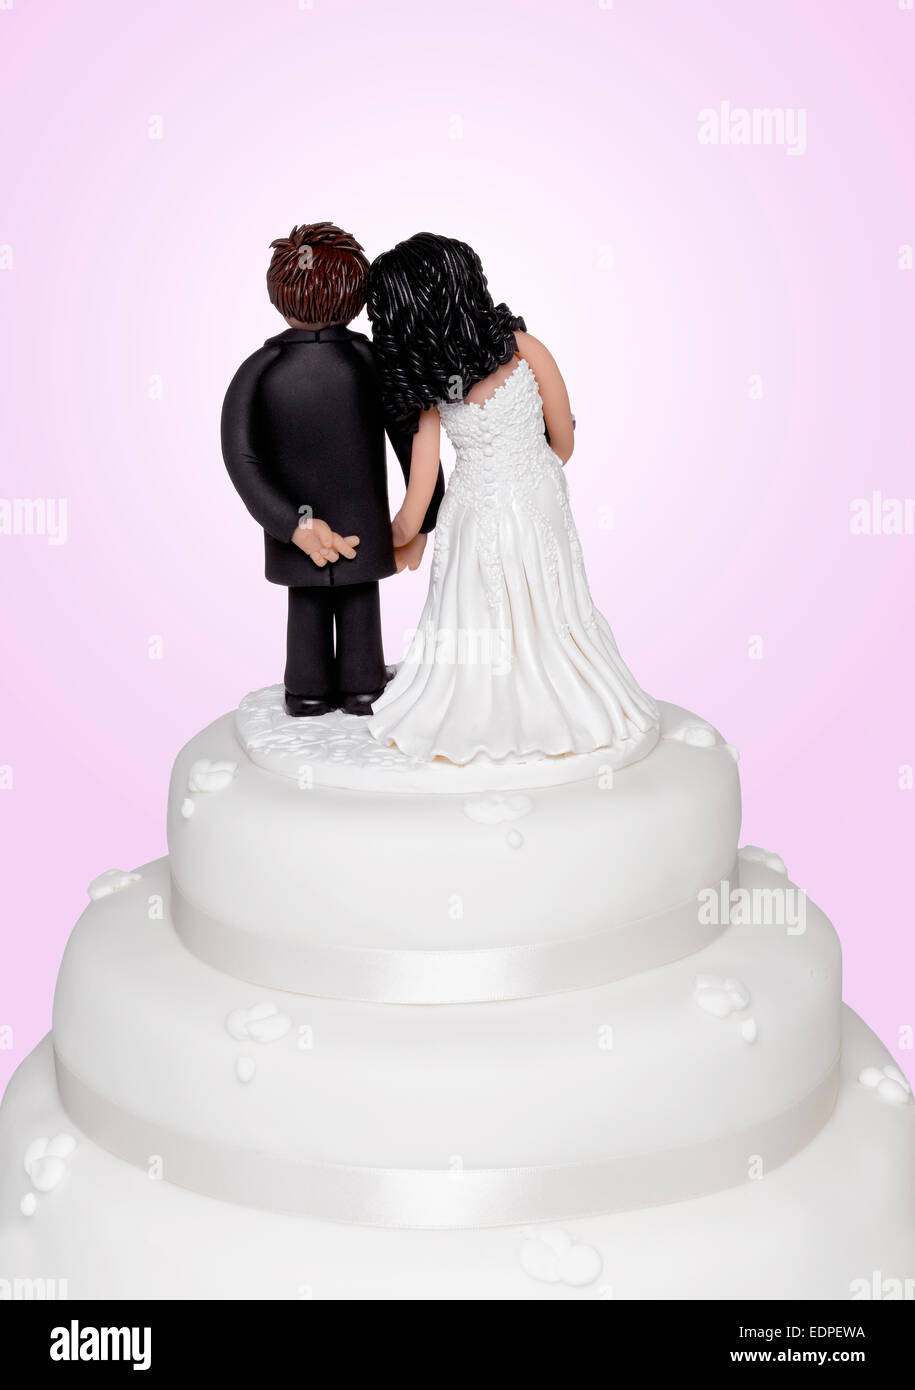 Un cake topper montrant le marié traversant ses doigts Banque D'Images